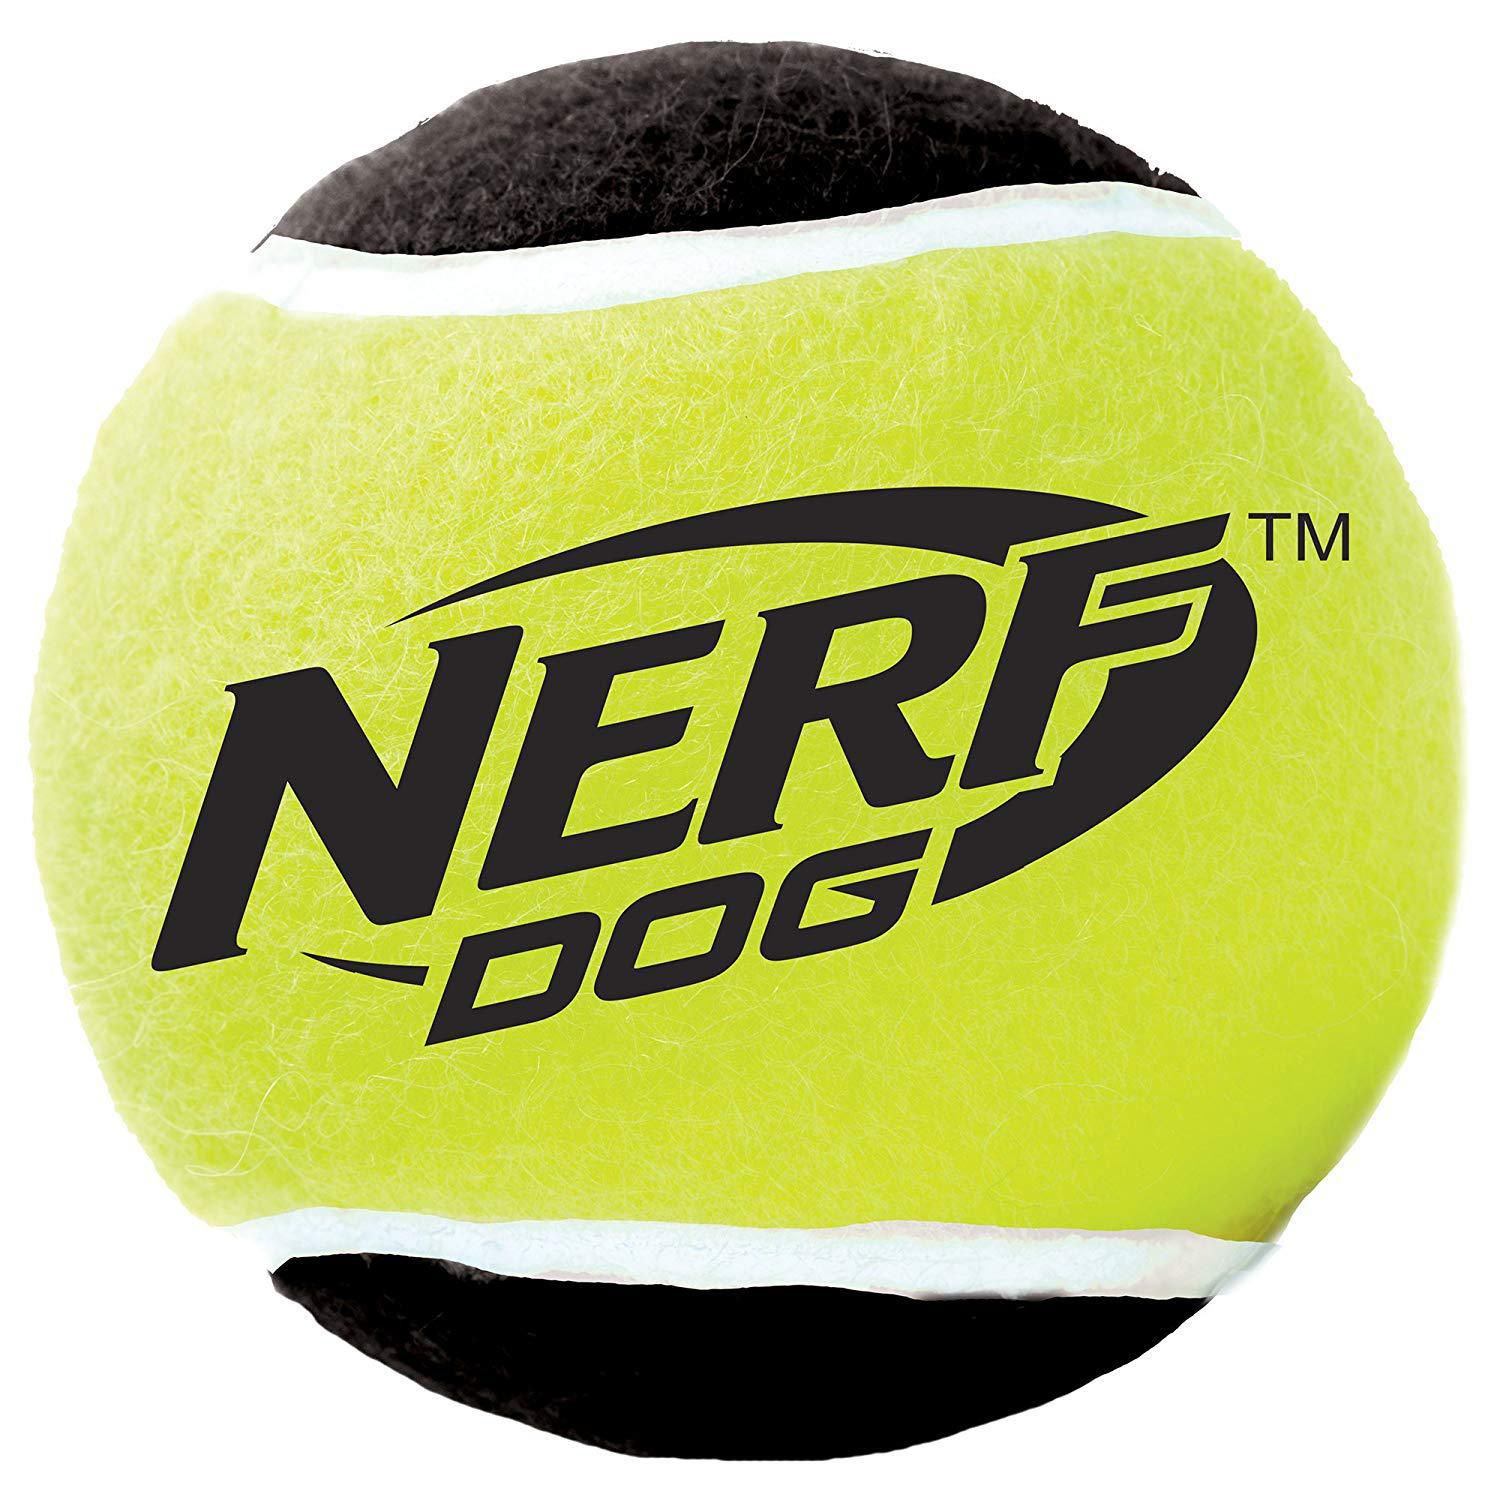 Balle de tennis distributrice de gâteries pour chiens